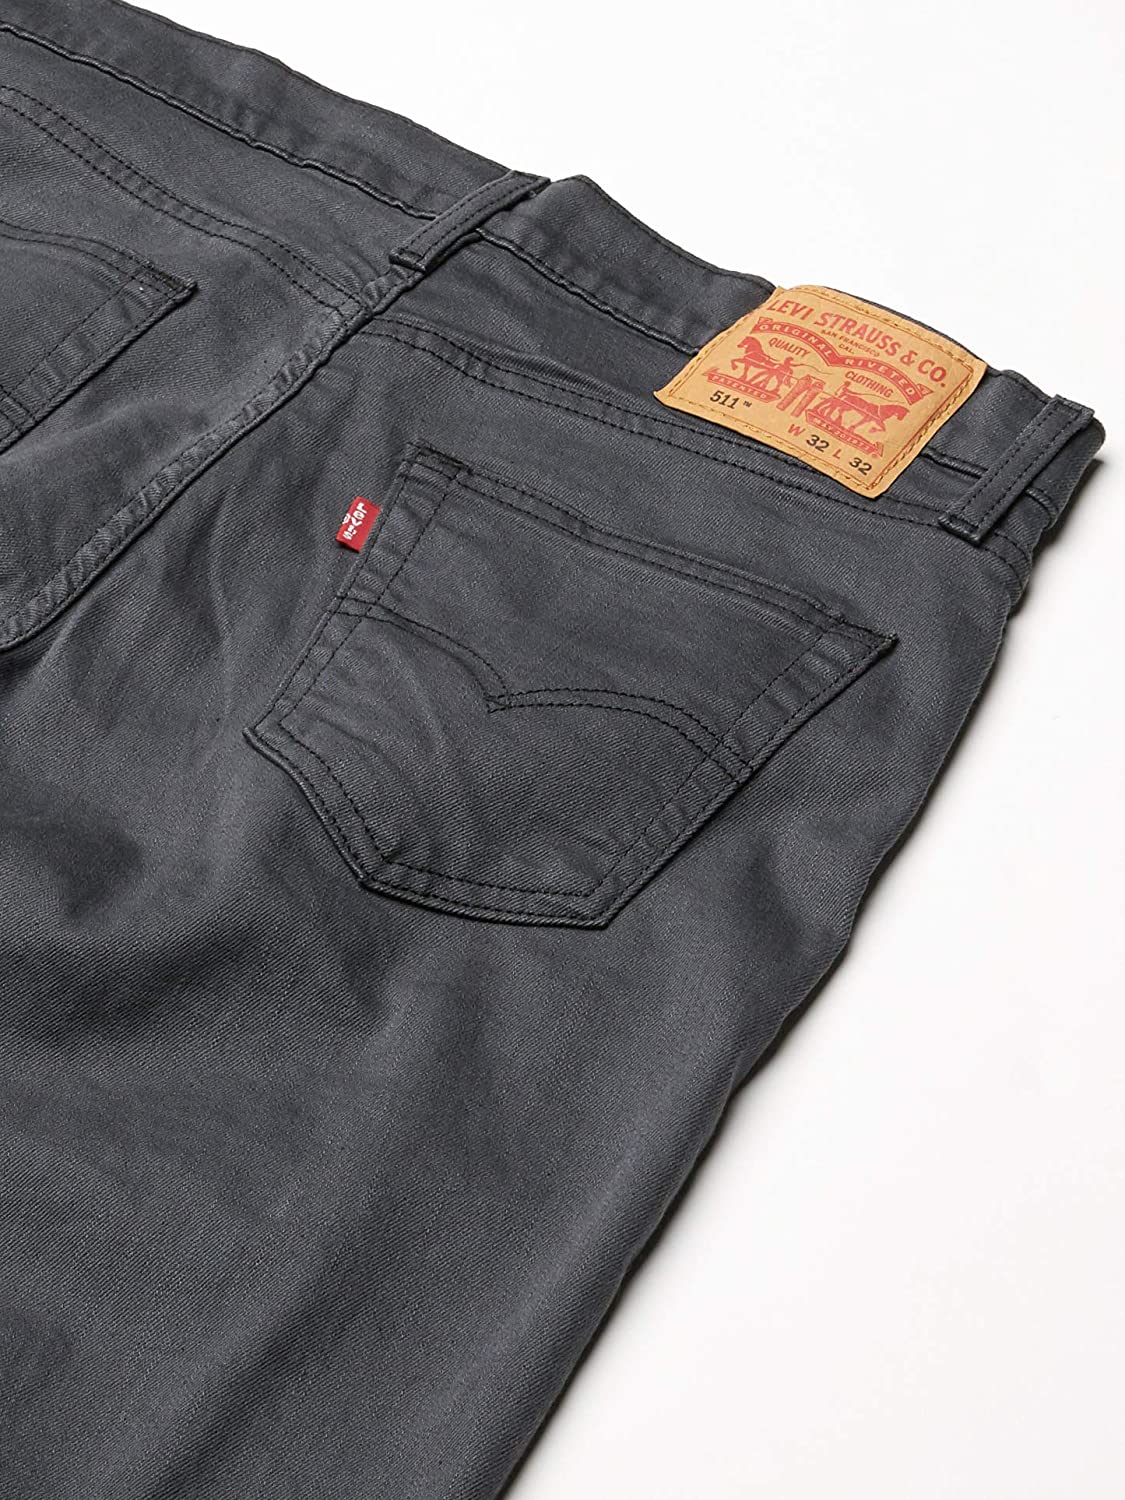 Levi's Men's 511 Slim Fit Jeans, Black, Size 36W x 36L EWII ...